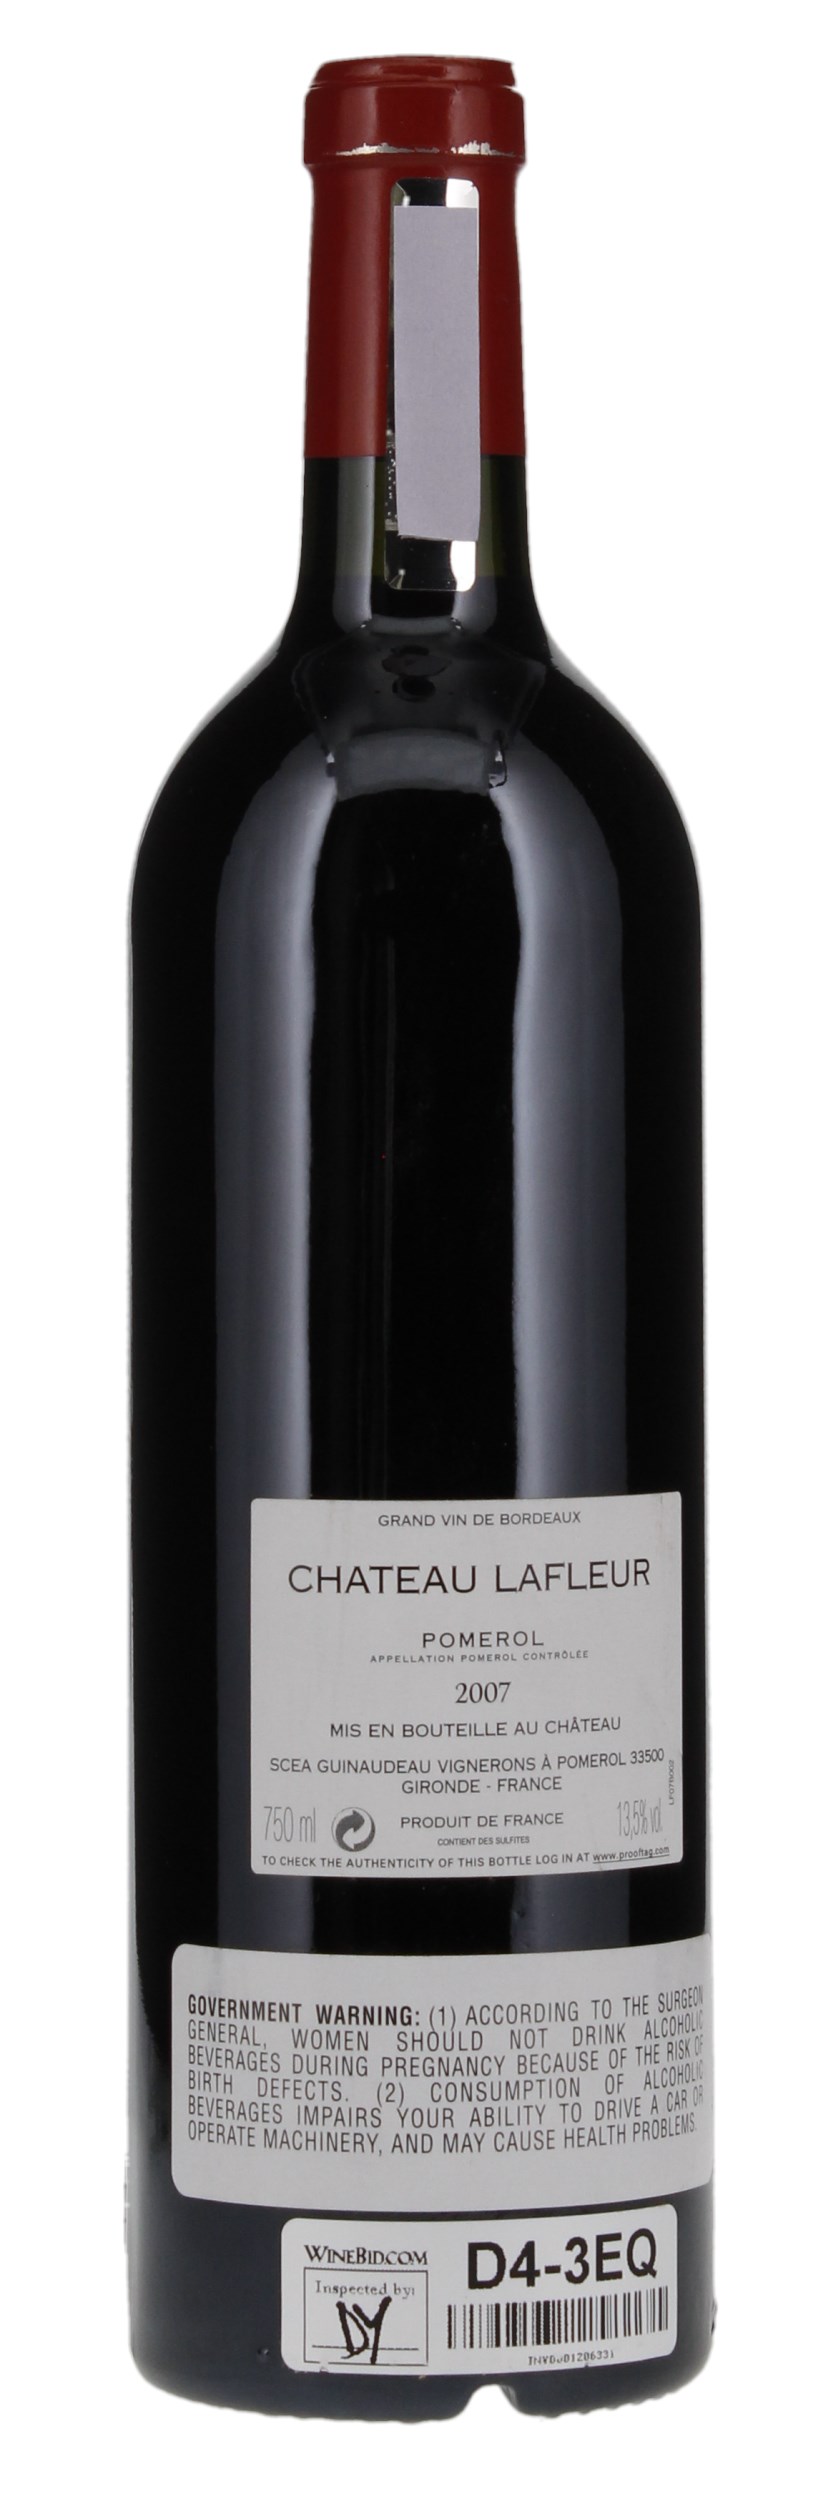 2007 Château Lafleur, 750ml